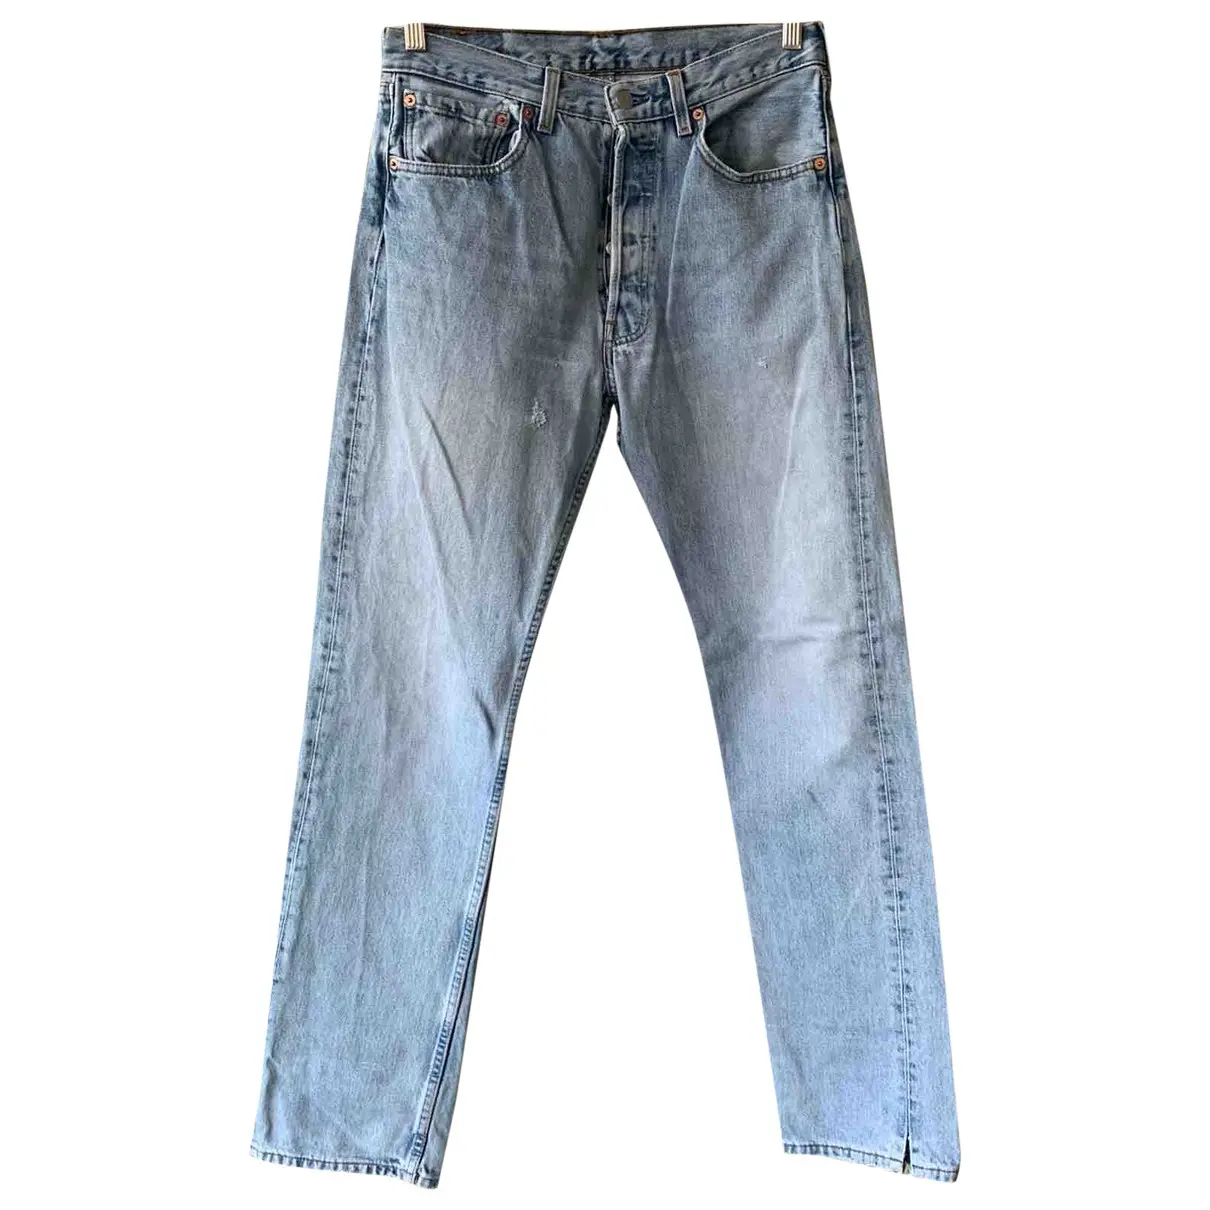 Blue Cotton Jeans 501 Levi's - Vintage